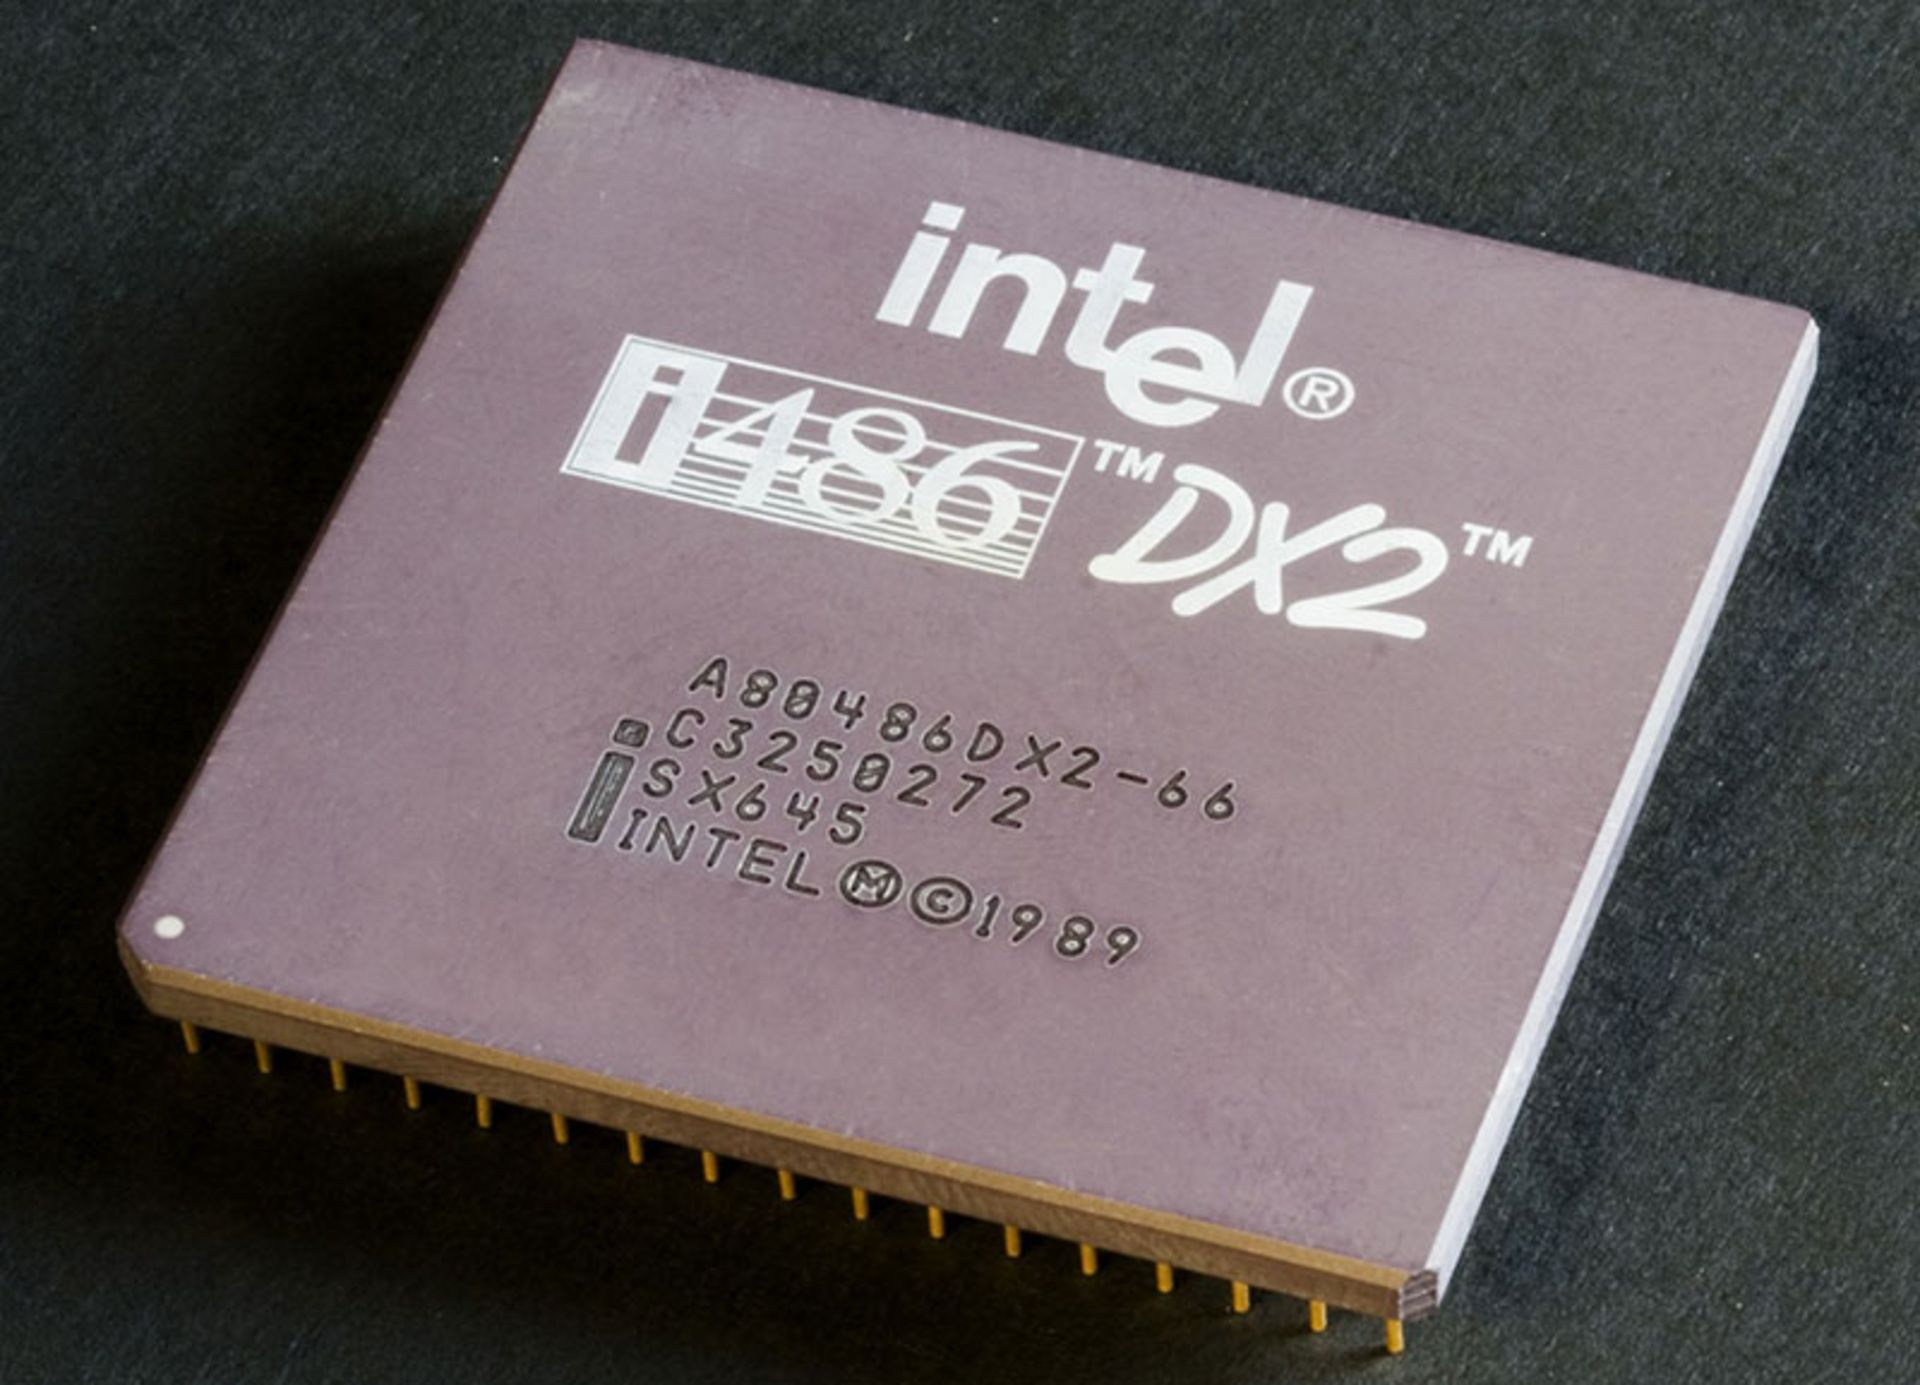 مرجع متخصصين ايران پردازنده اينتل intel 486 